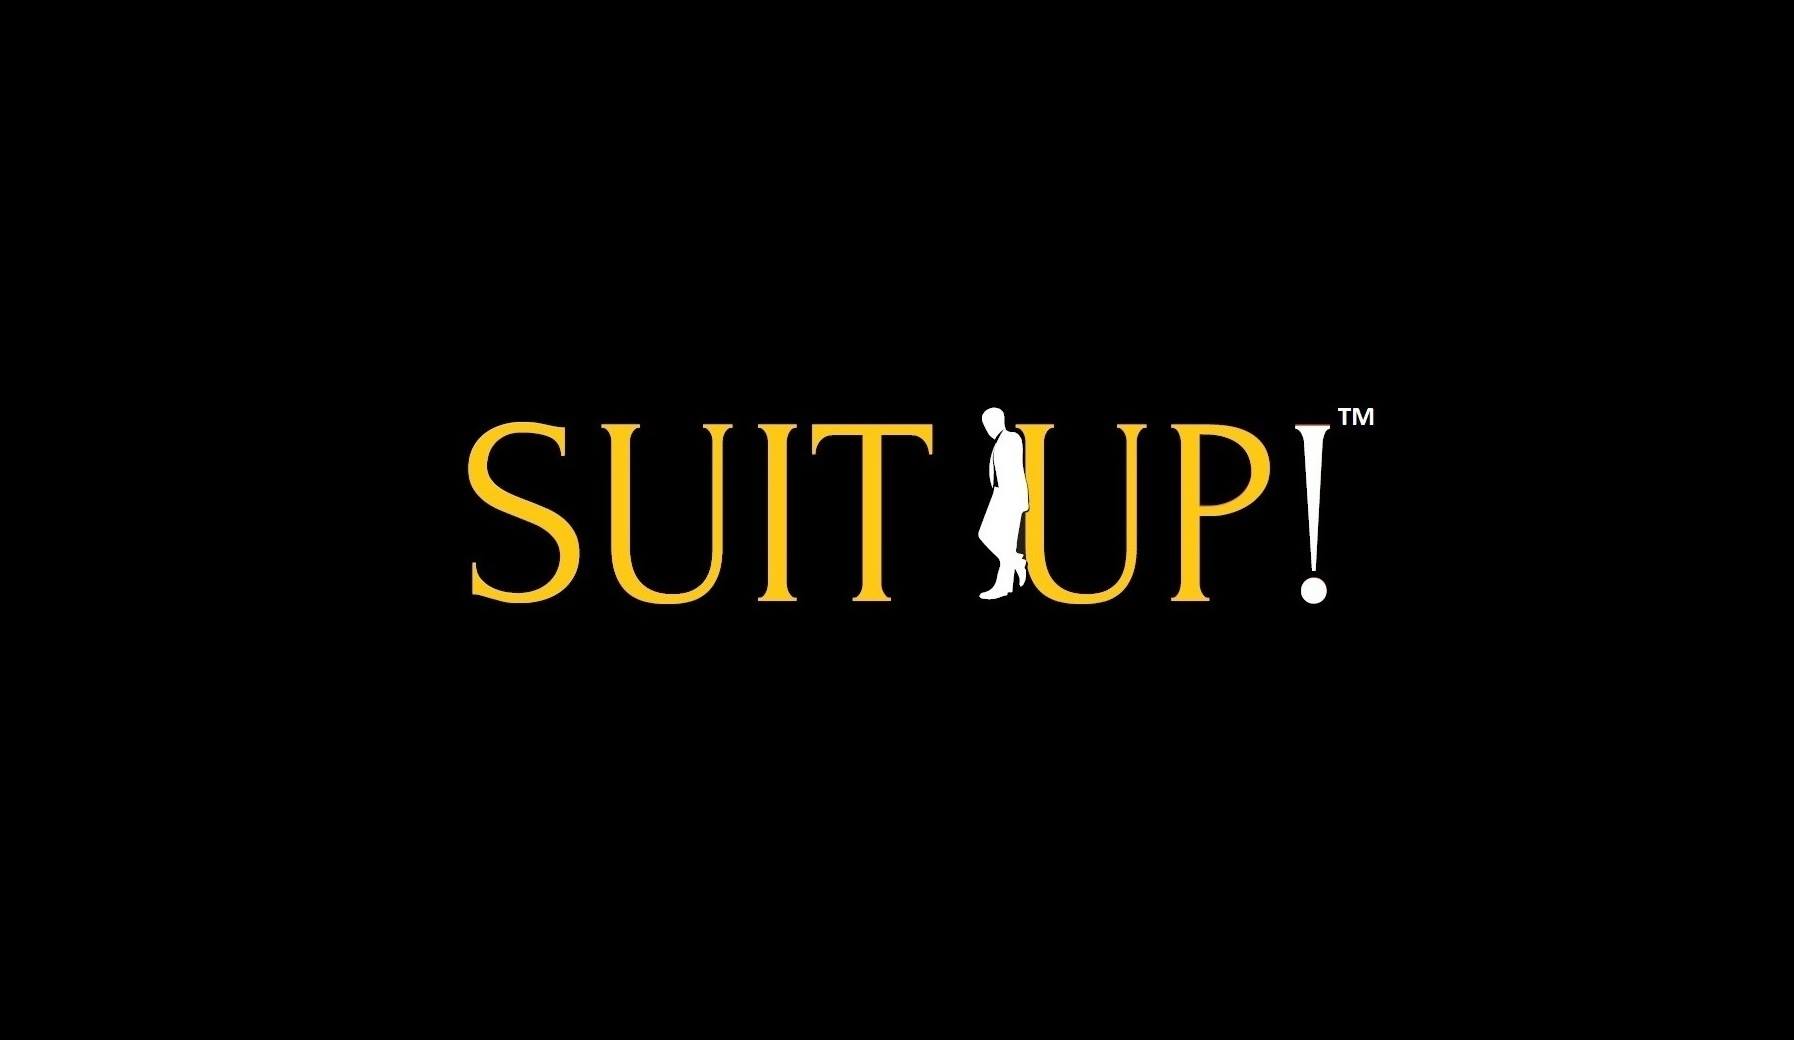 Suit Up!